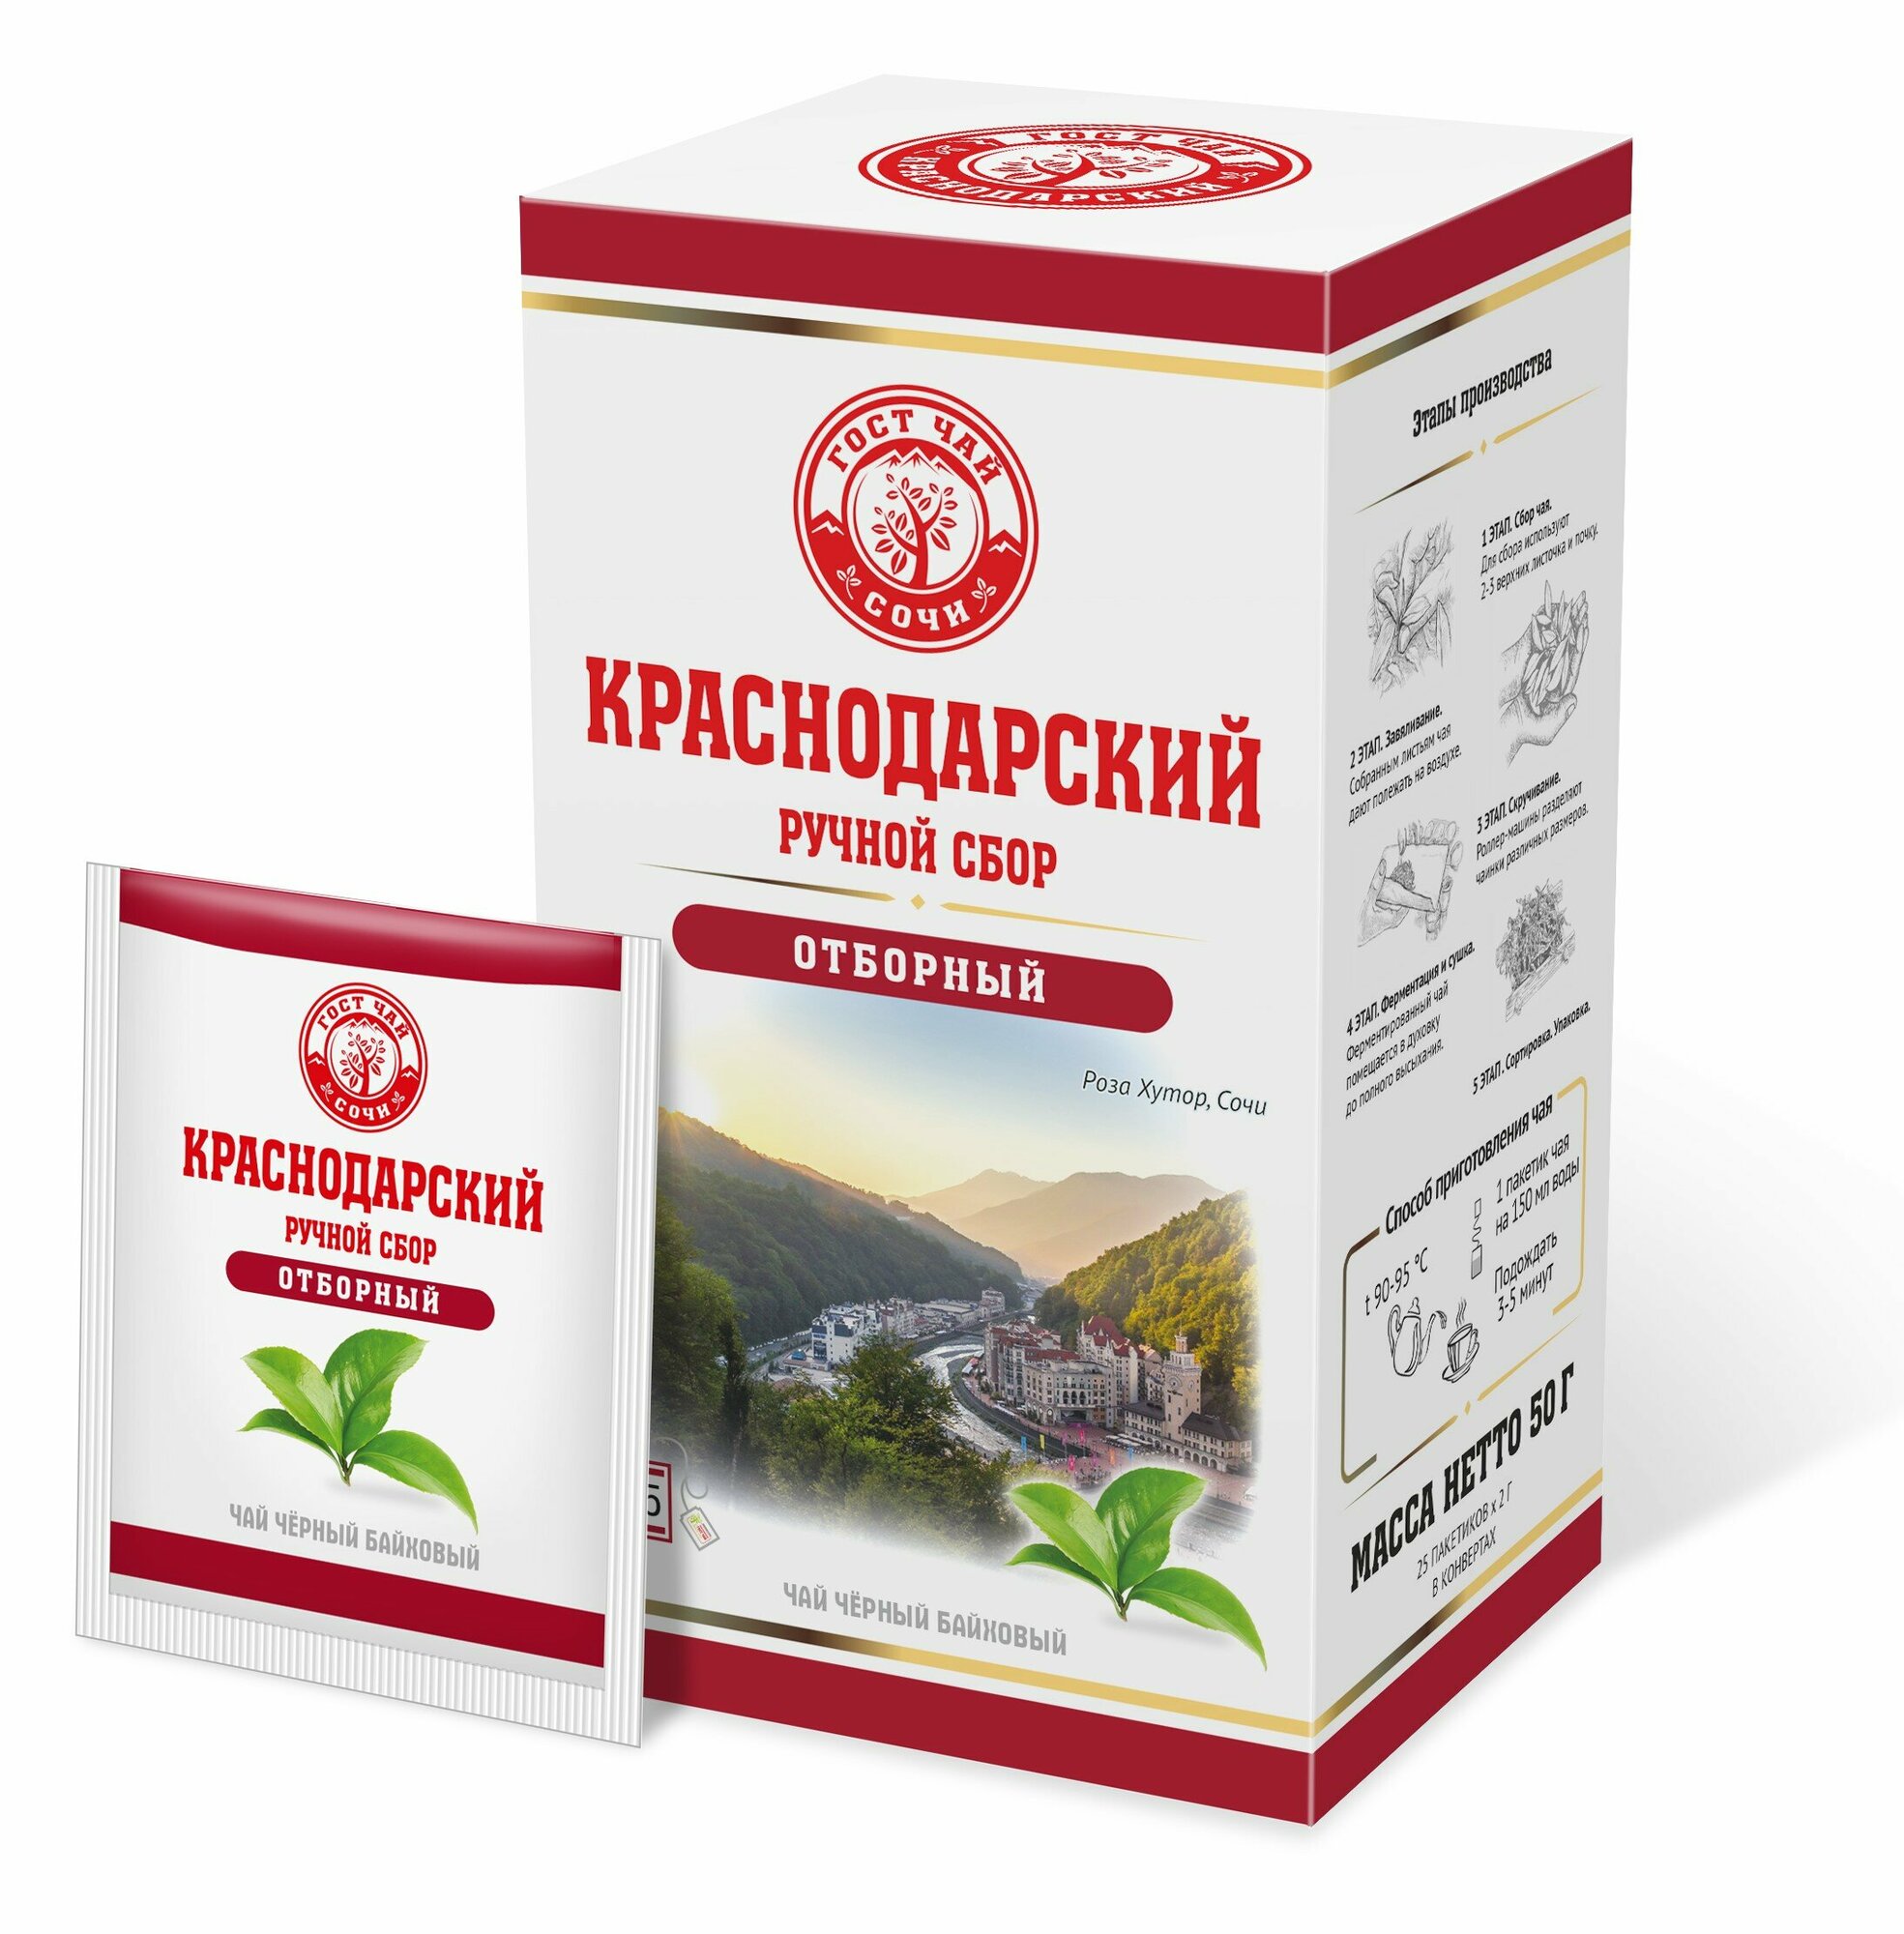 Краснодарский чай Ручной сбор черный отборный 25пак-саше 50гр